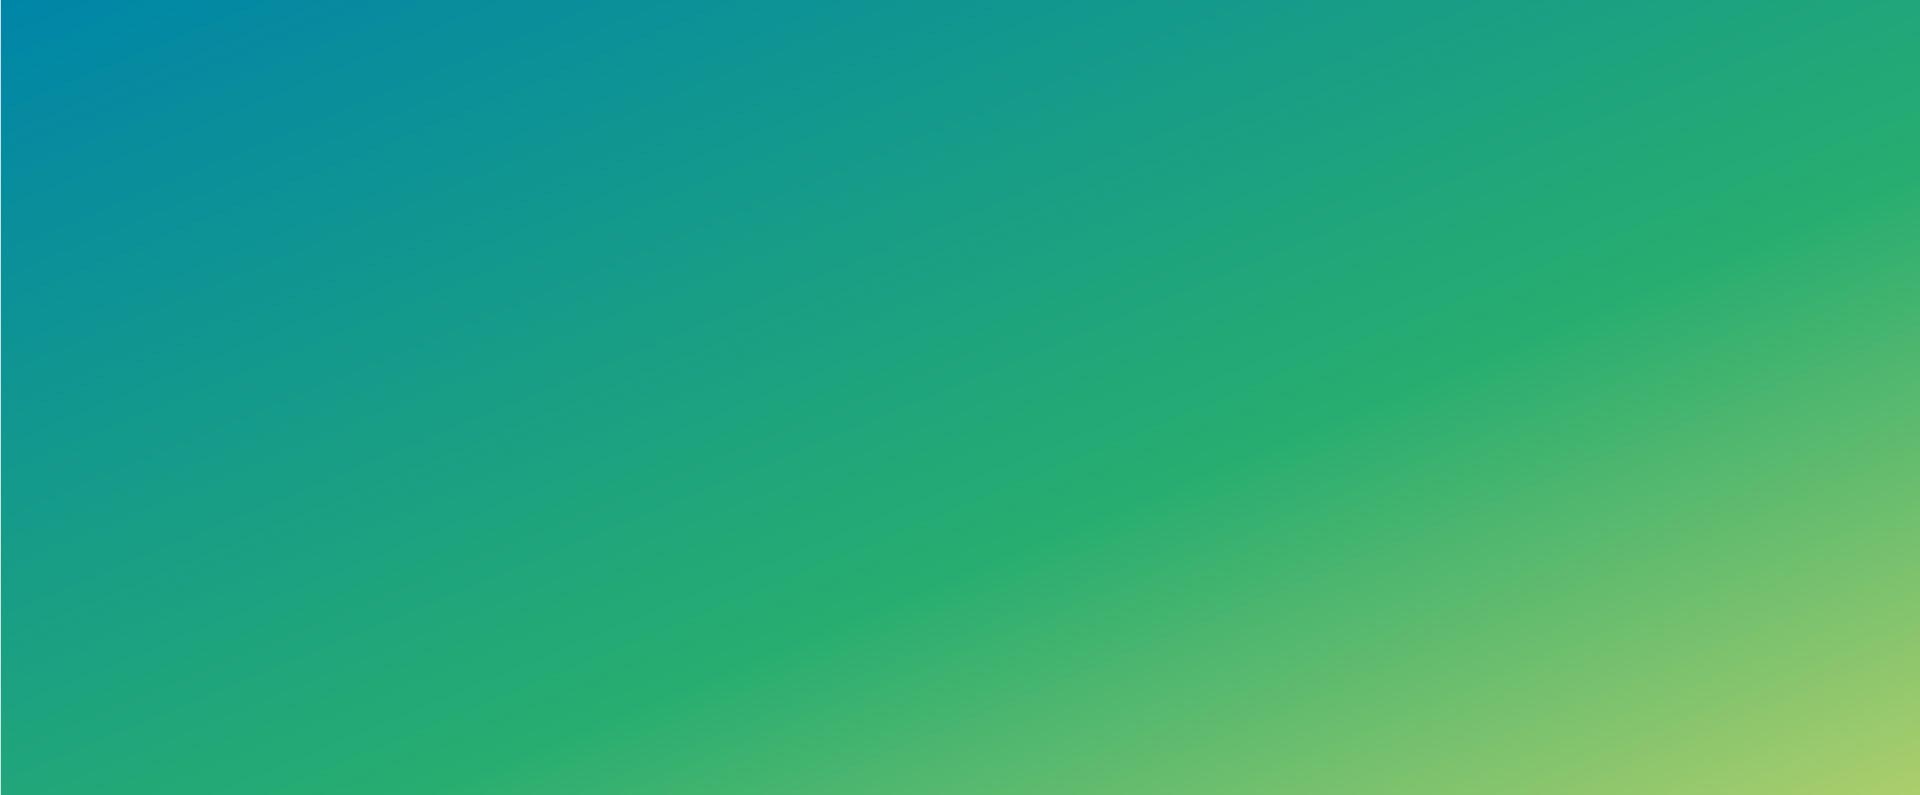 blau-grüner Hintergrund